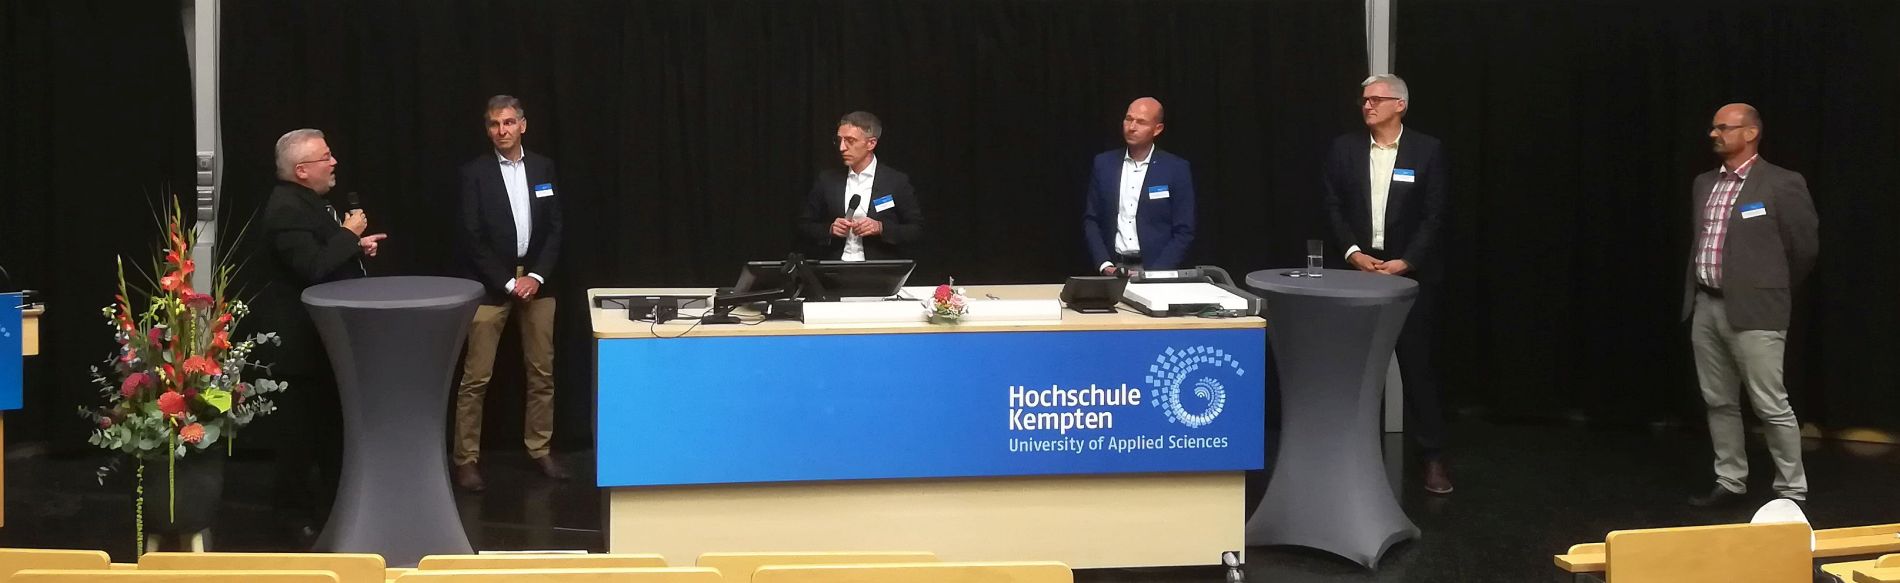 Podiumsdiskussion mit (von links) Prof. Mehr, Hr. Dornburg, Hr. Hagemeier, Hr. OB Kiechle, Hr. Berchtold und Hr. Lumer